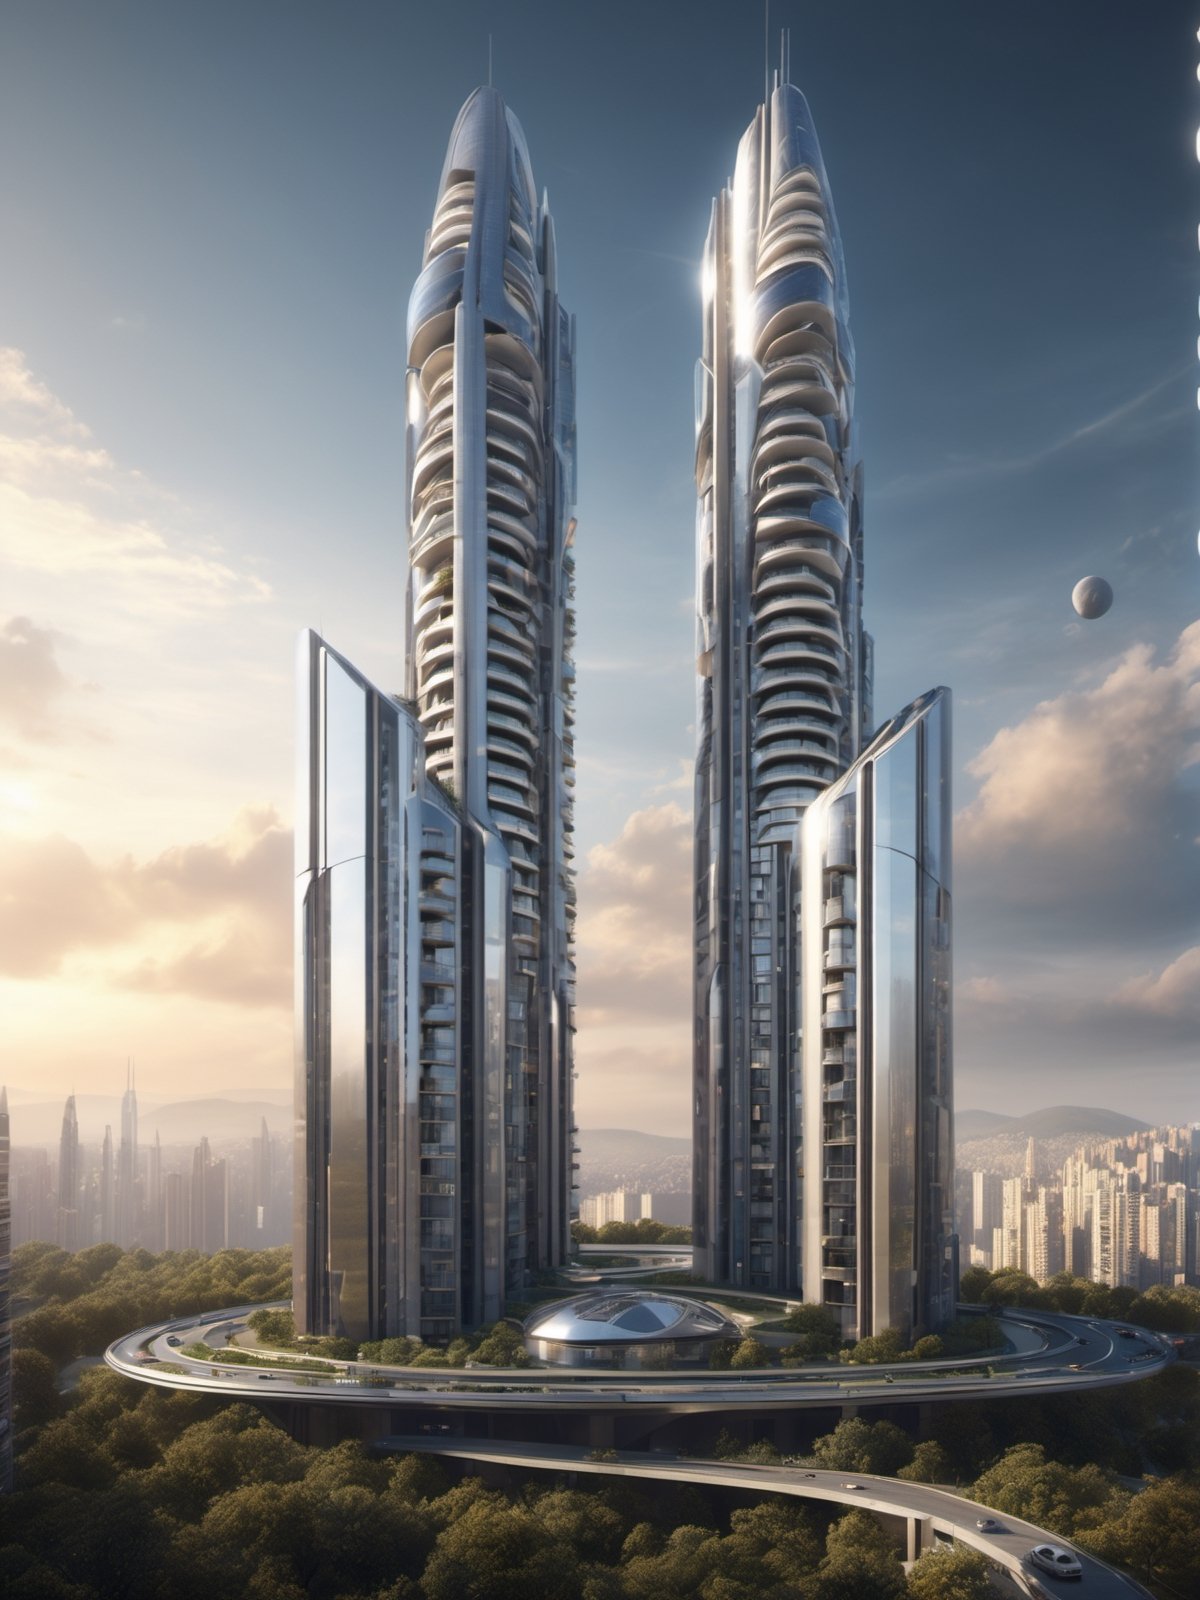 Create a photorealistic Omega-shaped futuristic apartment tower